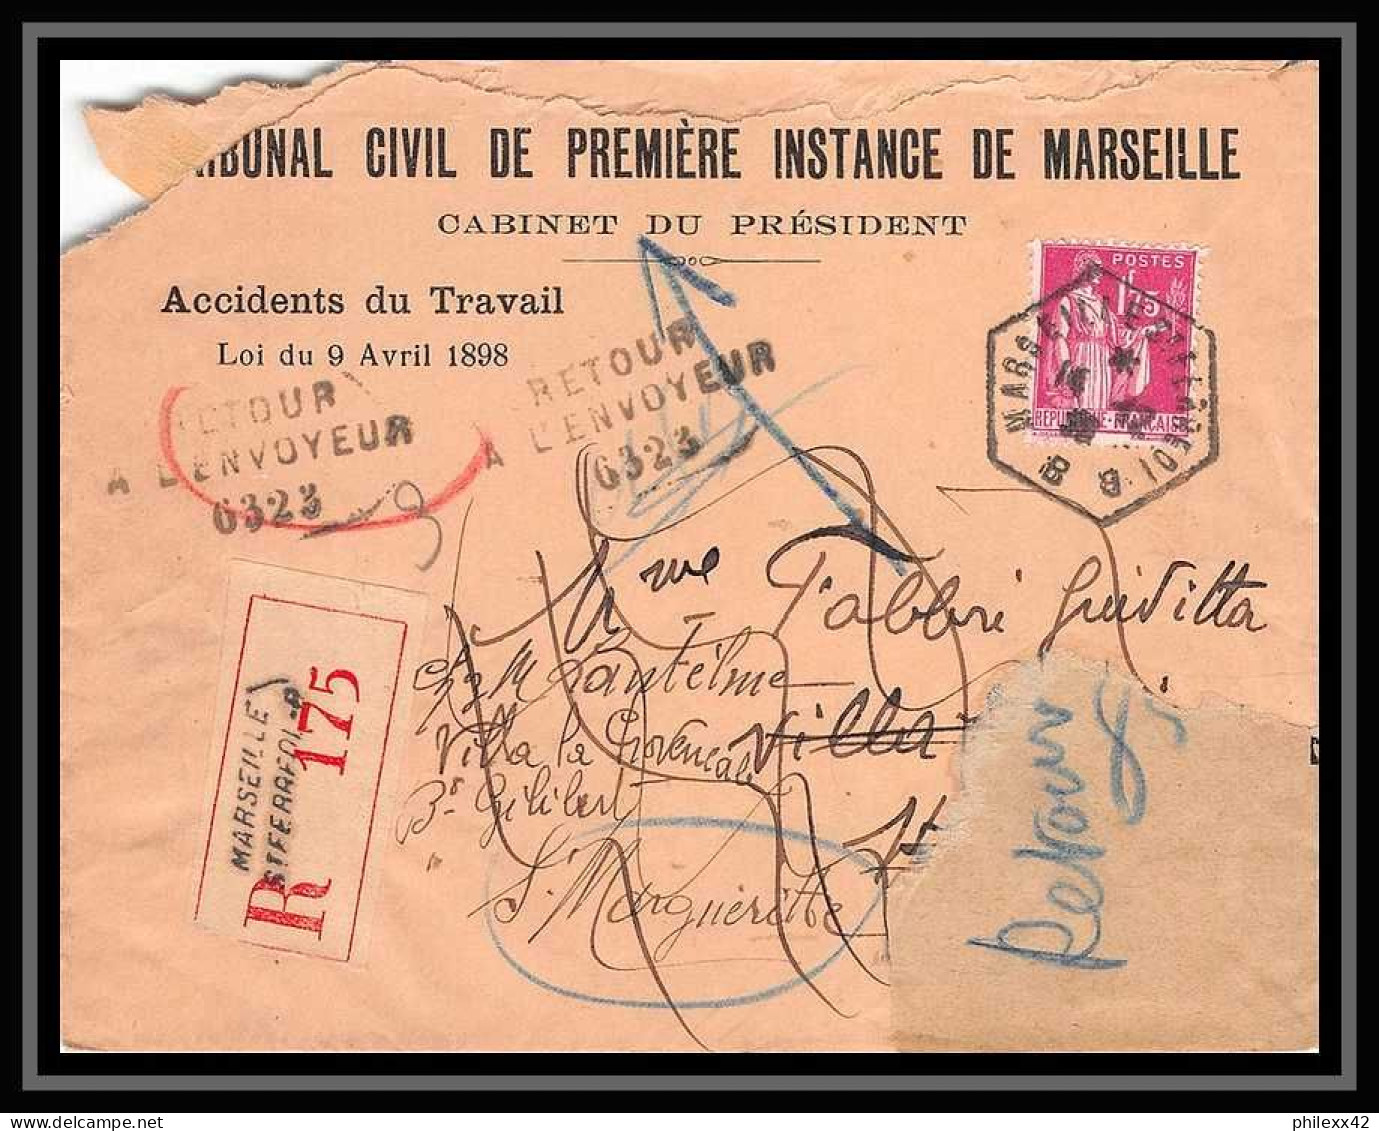 107758 lot de 12 Lettres dont recommandé Bouches du rhone Marseille Sainte marguerite